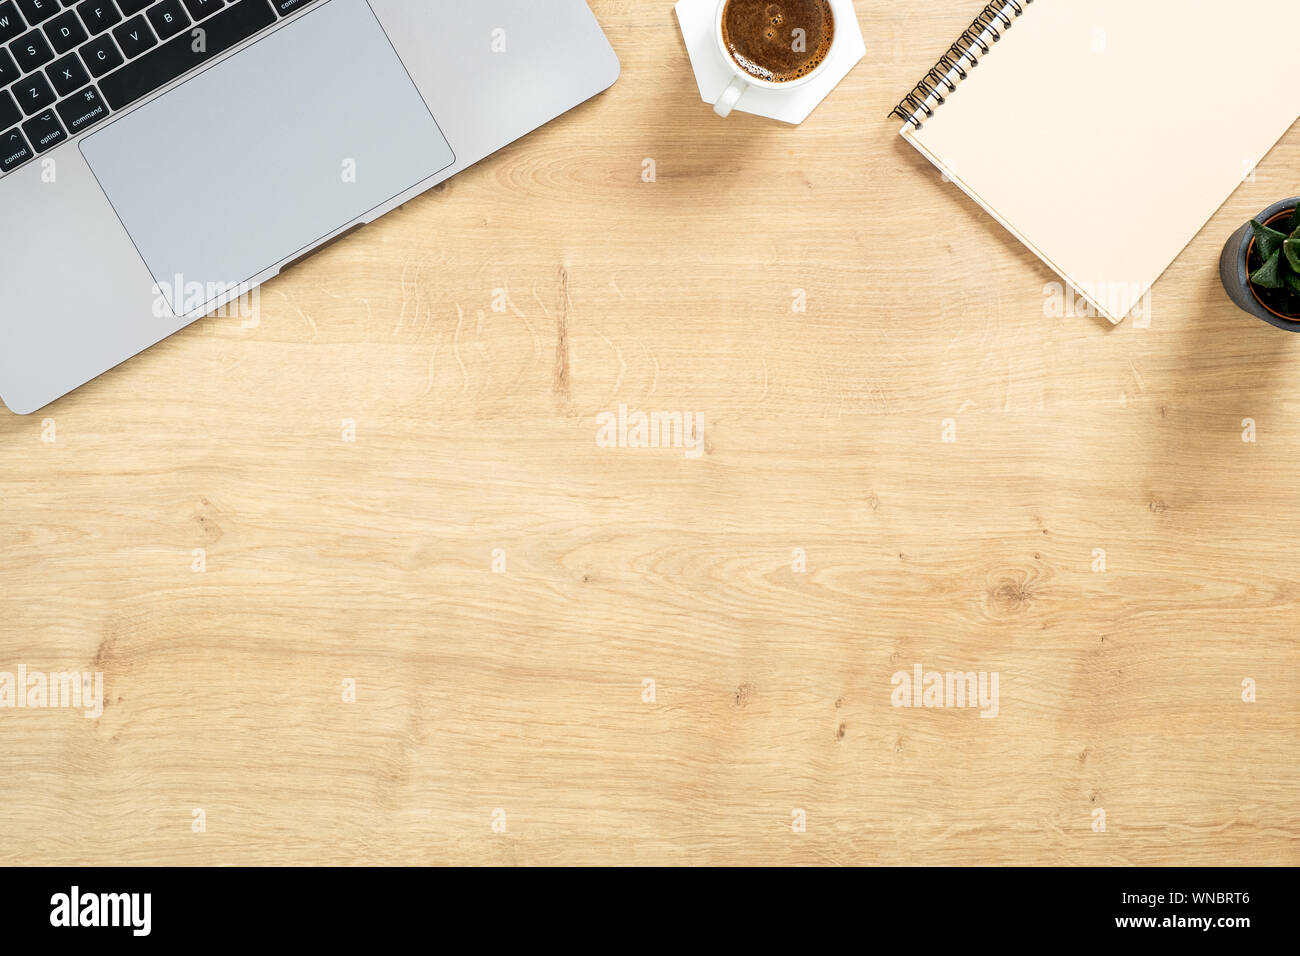 Moderne Holz- büro Schreibtisch Tisch mit Laptop, Papier notepad, sukkulente Pflanze, Kaffee Tasse. Ansicht von oben mit der Kopie Raum, flach. Feminine workspa Stockfoto